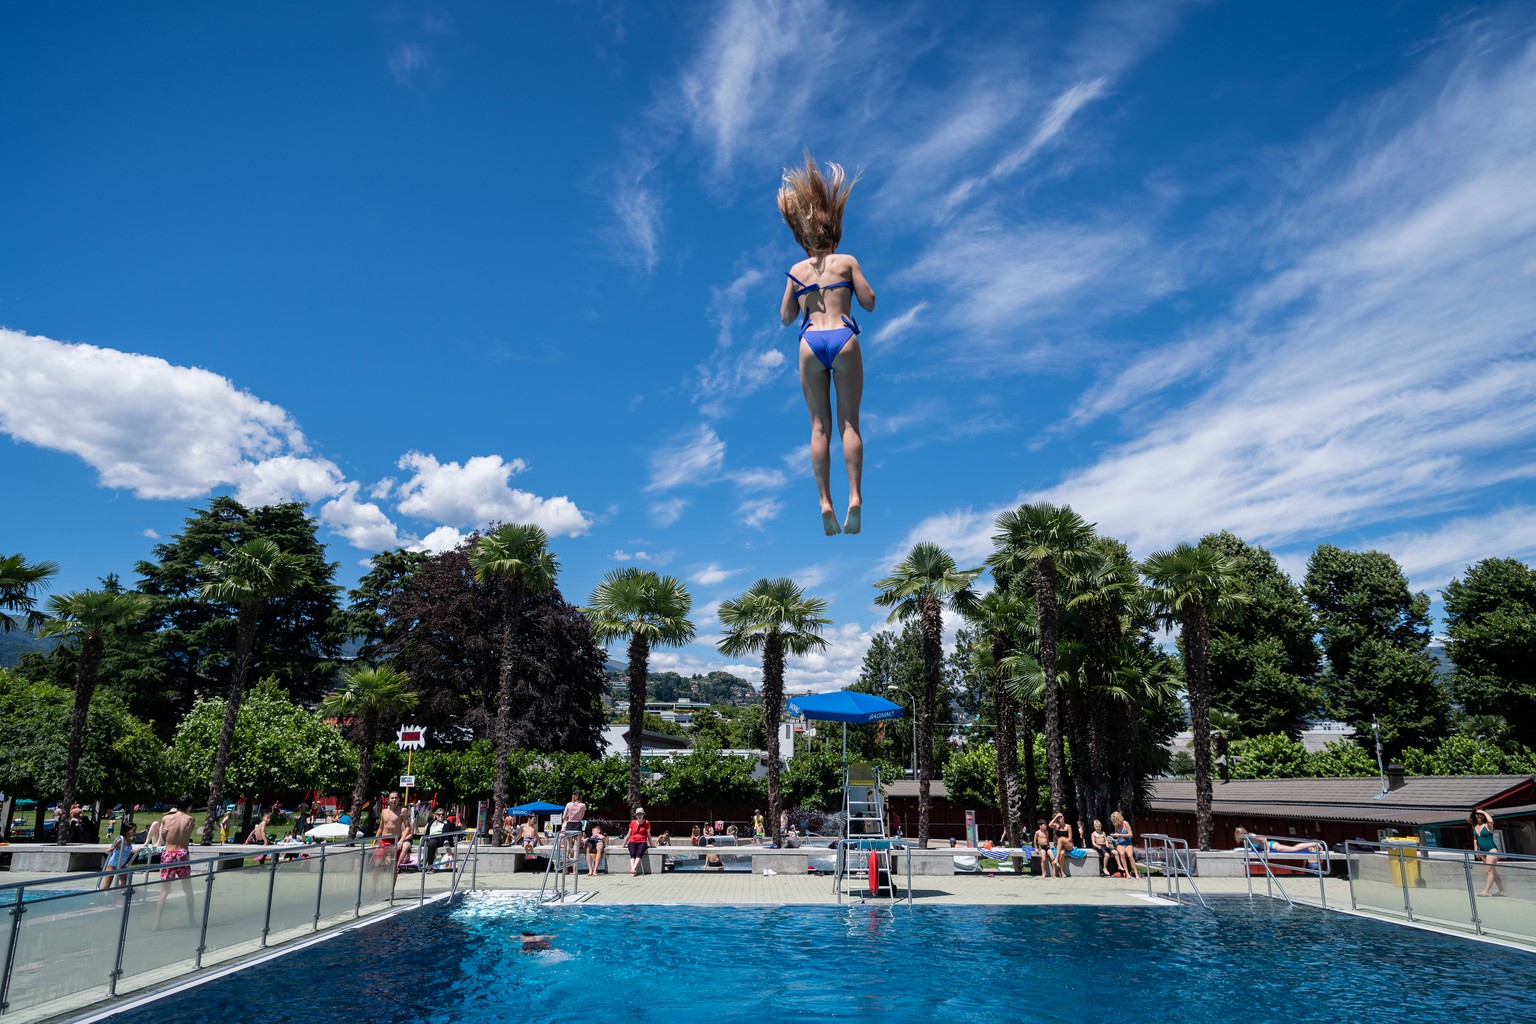 Eine Jugendliche springt vom Sprungturm nach der Wiedereroeffnung des Seebads und des Freibads Lido di Lugano, am Samstag, 20. Juni 2020. Unter den Praeventionsmassnahmen im Zusammenhang mit der Coron ...